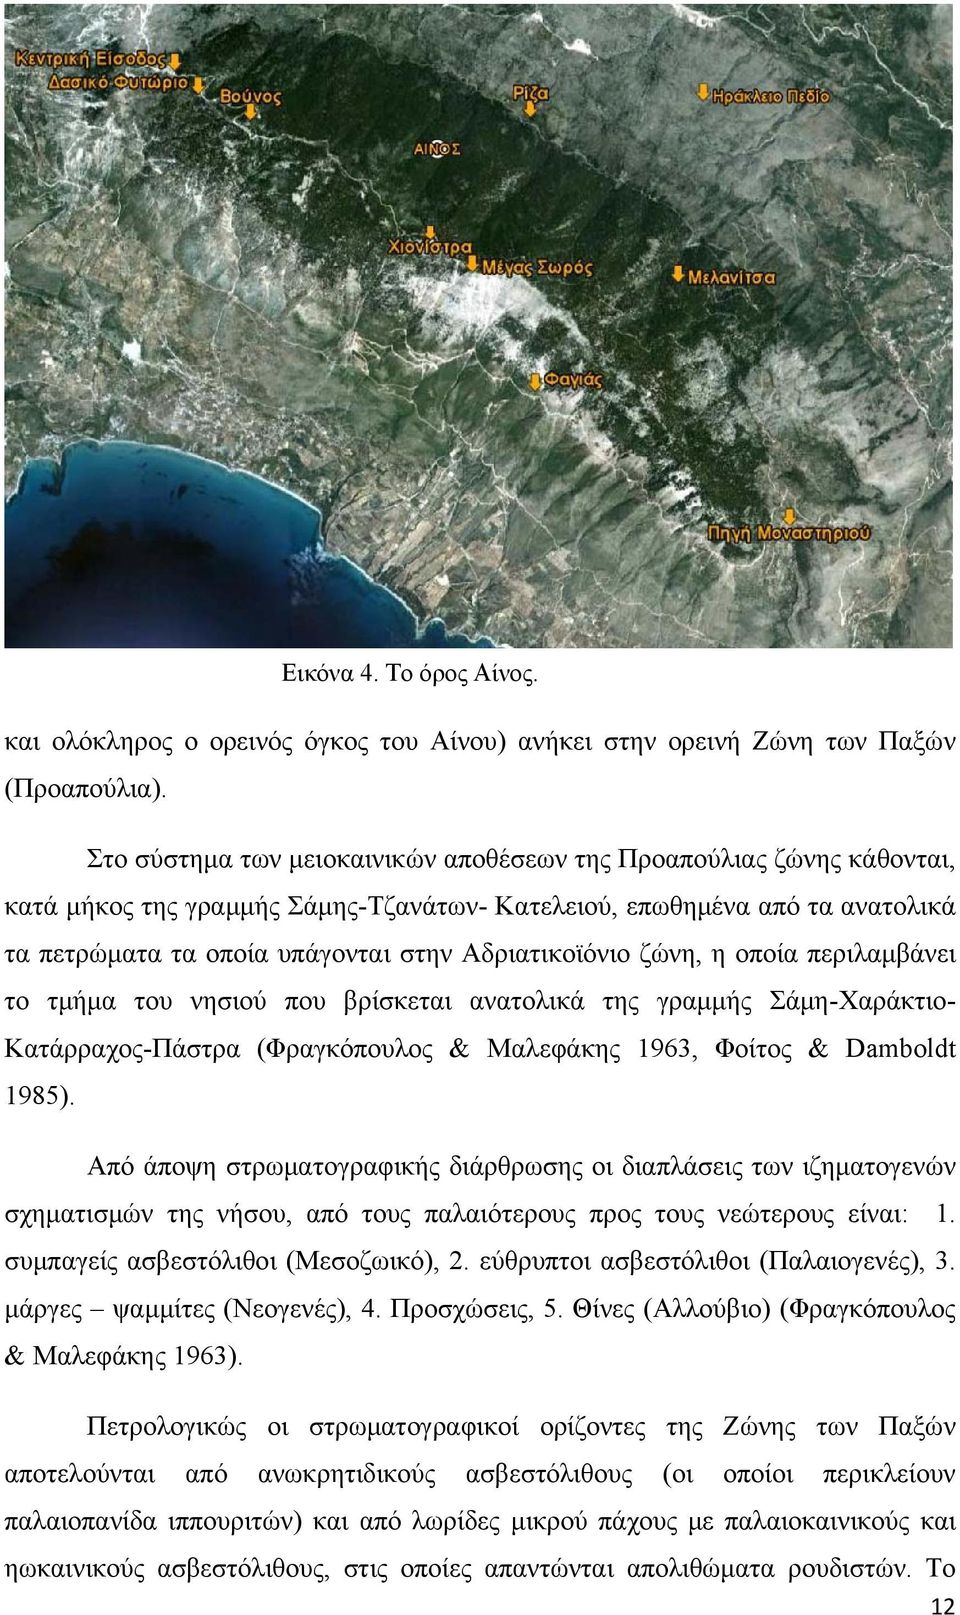 ζώνη, η οποία περιλαμβάνει το τμήμα του νησιού που βρίσκεται ανατολικά της γραμμής Σάμη-Χαράκτιο- Κατάρραχος-Πάστρα (Φραγκόπουλος & Μαλεφάκης 1963, Φοίτος & Damboldt 1985).